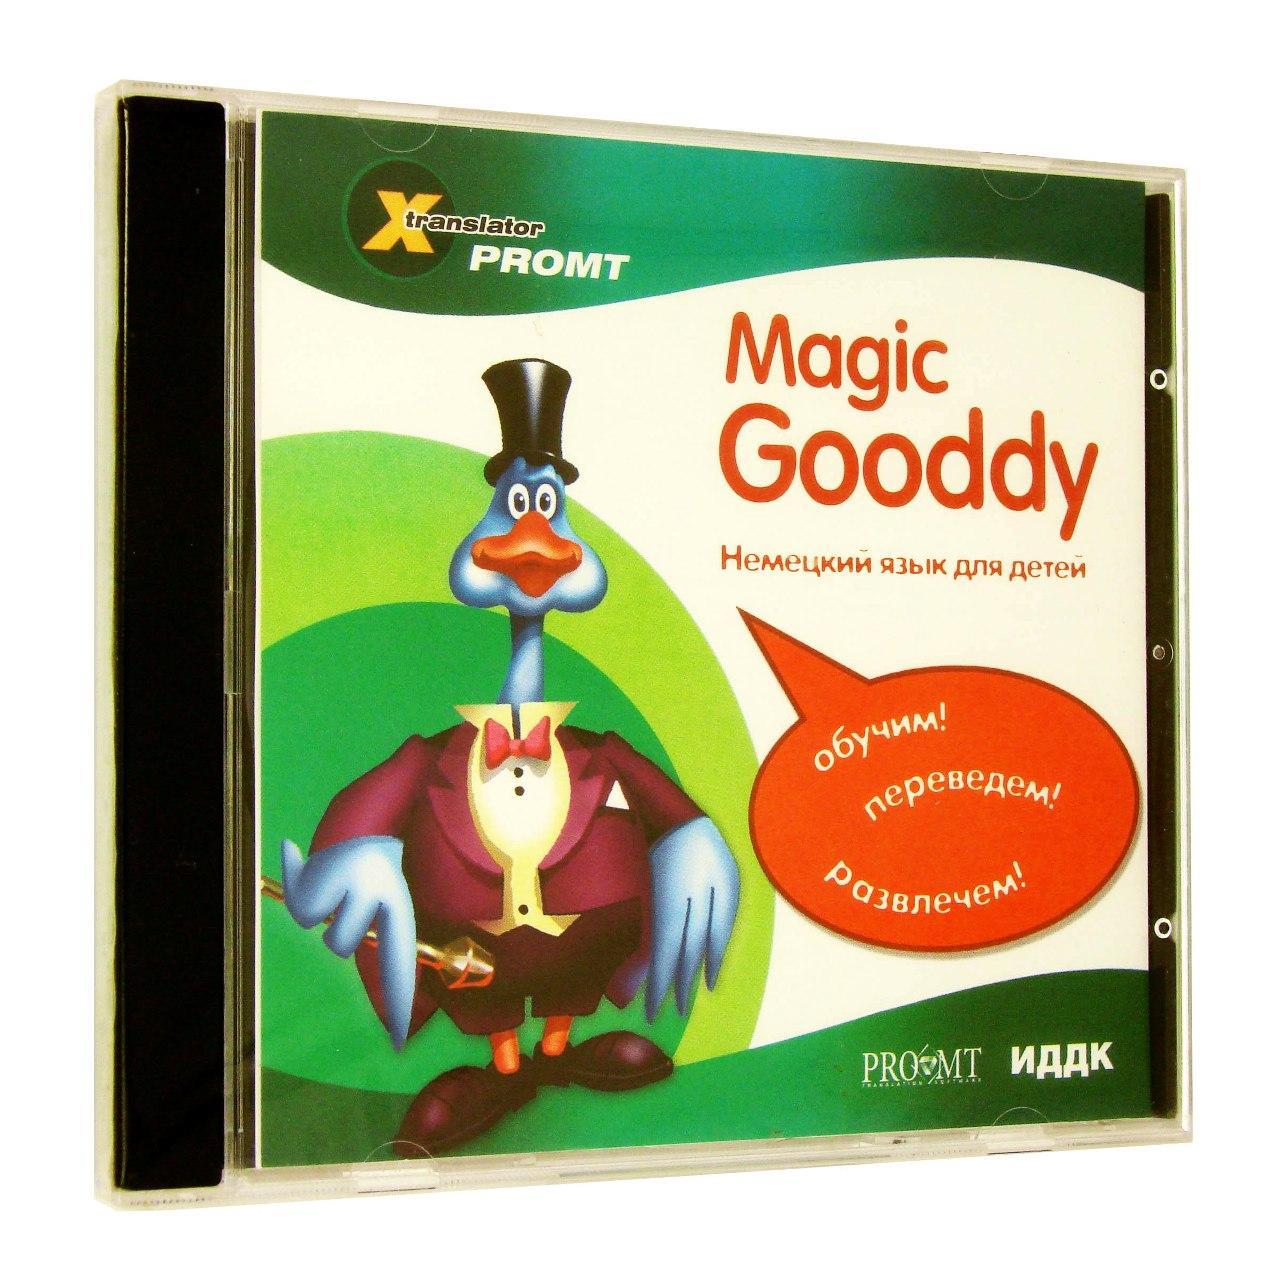 Компьютерный компакт-диск X-Translator. Magic Gooddy. немец. для детей (ПК), фирма "ИДДК", 1CD